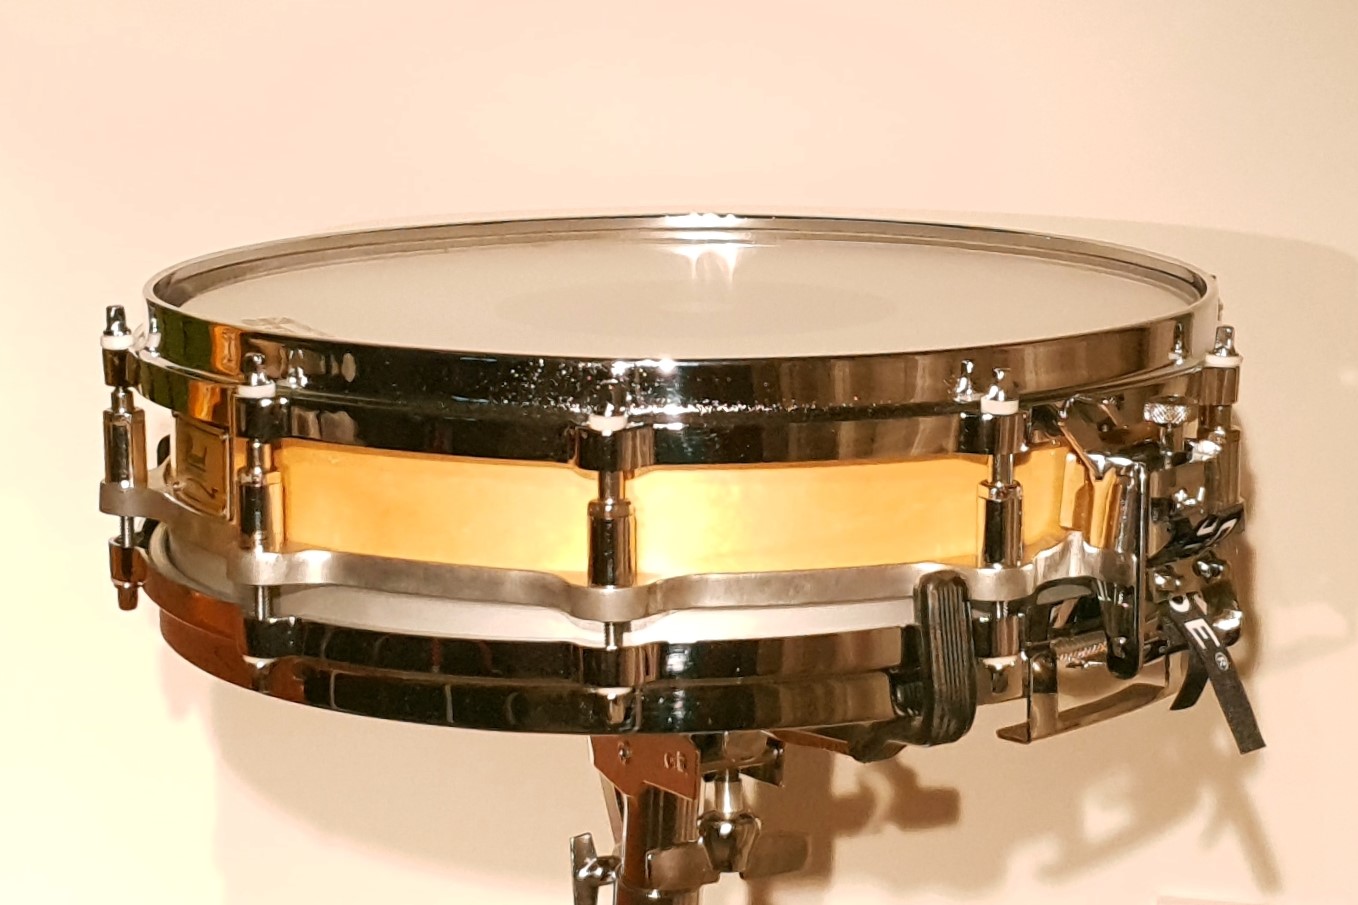 Vintage Drummer UK - Vintage Snare Drum Collection.